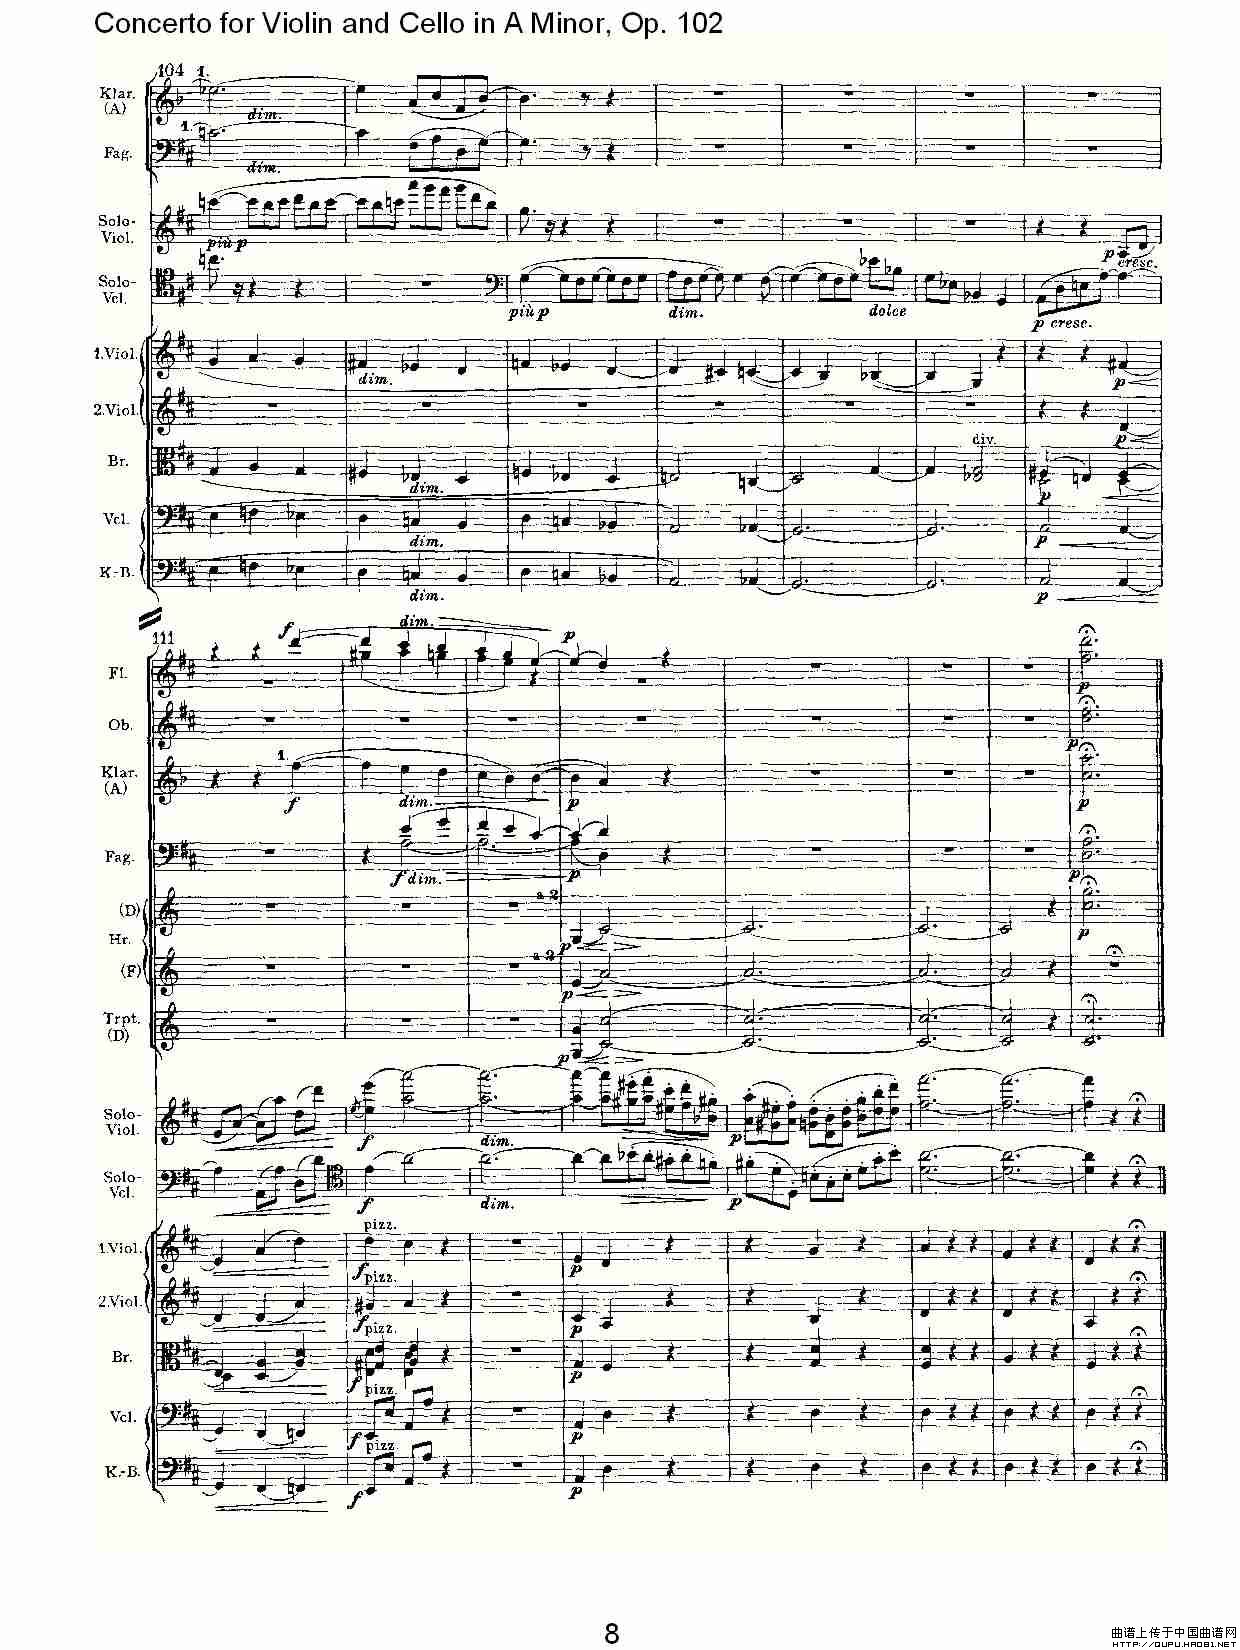 A小调小提琴与大提琴协奏曲, Op.102第二乐章小提琴谱